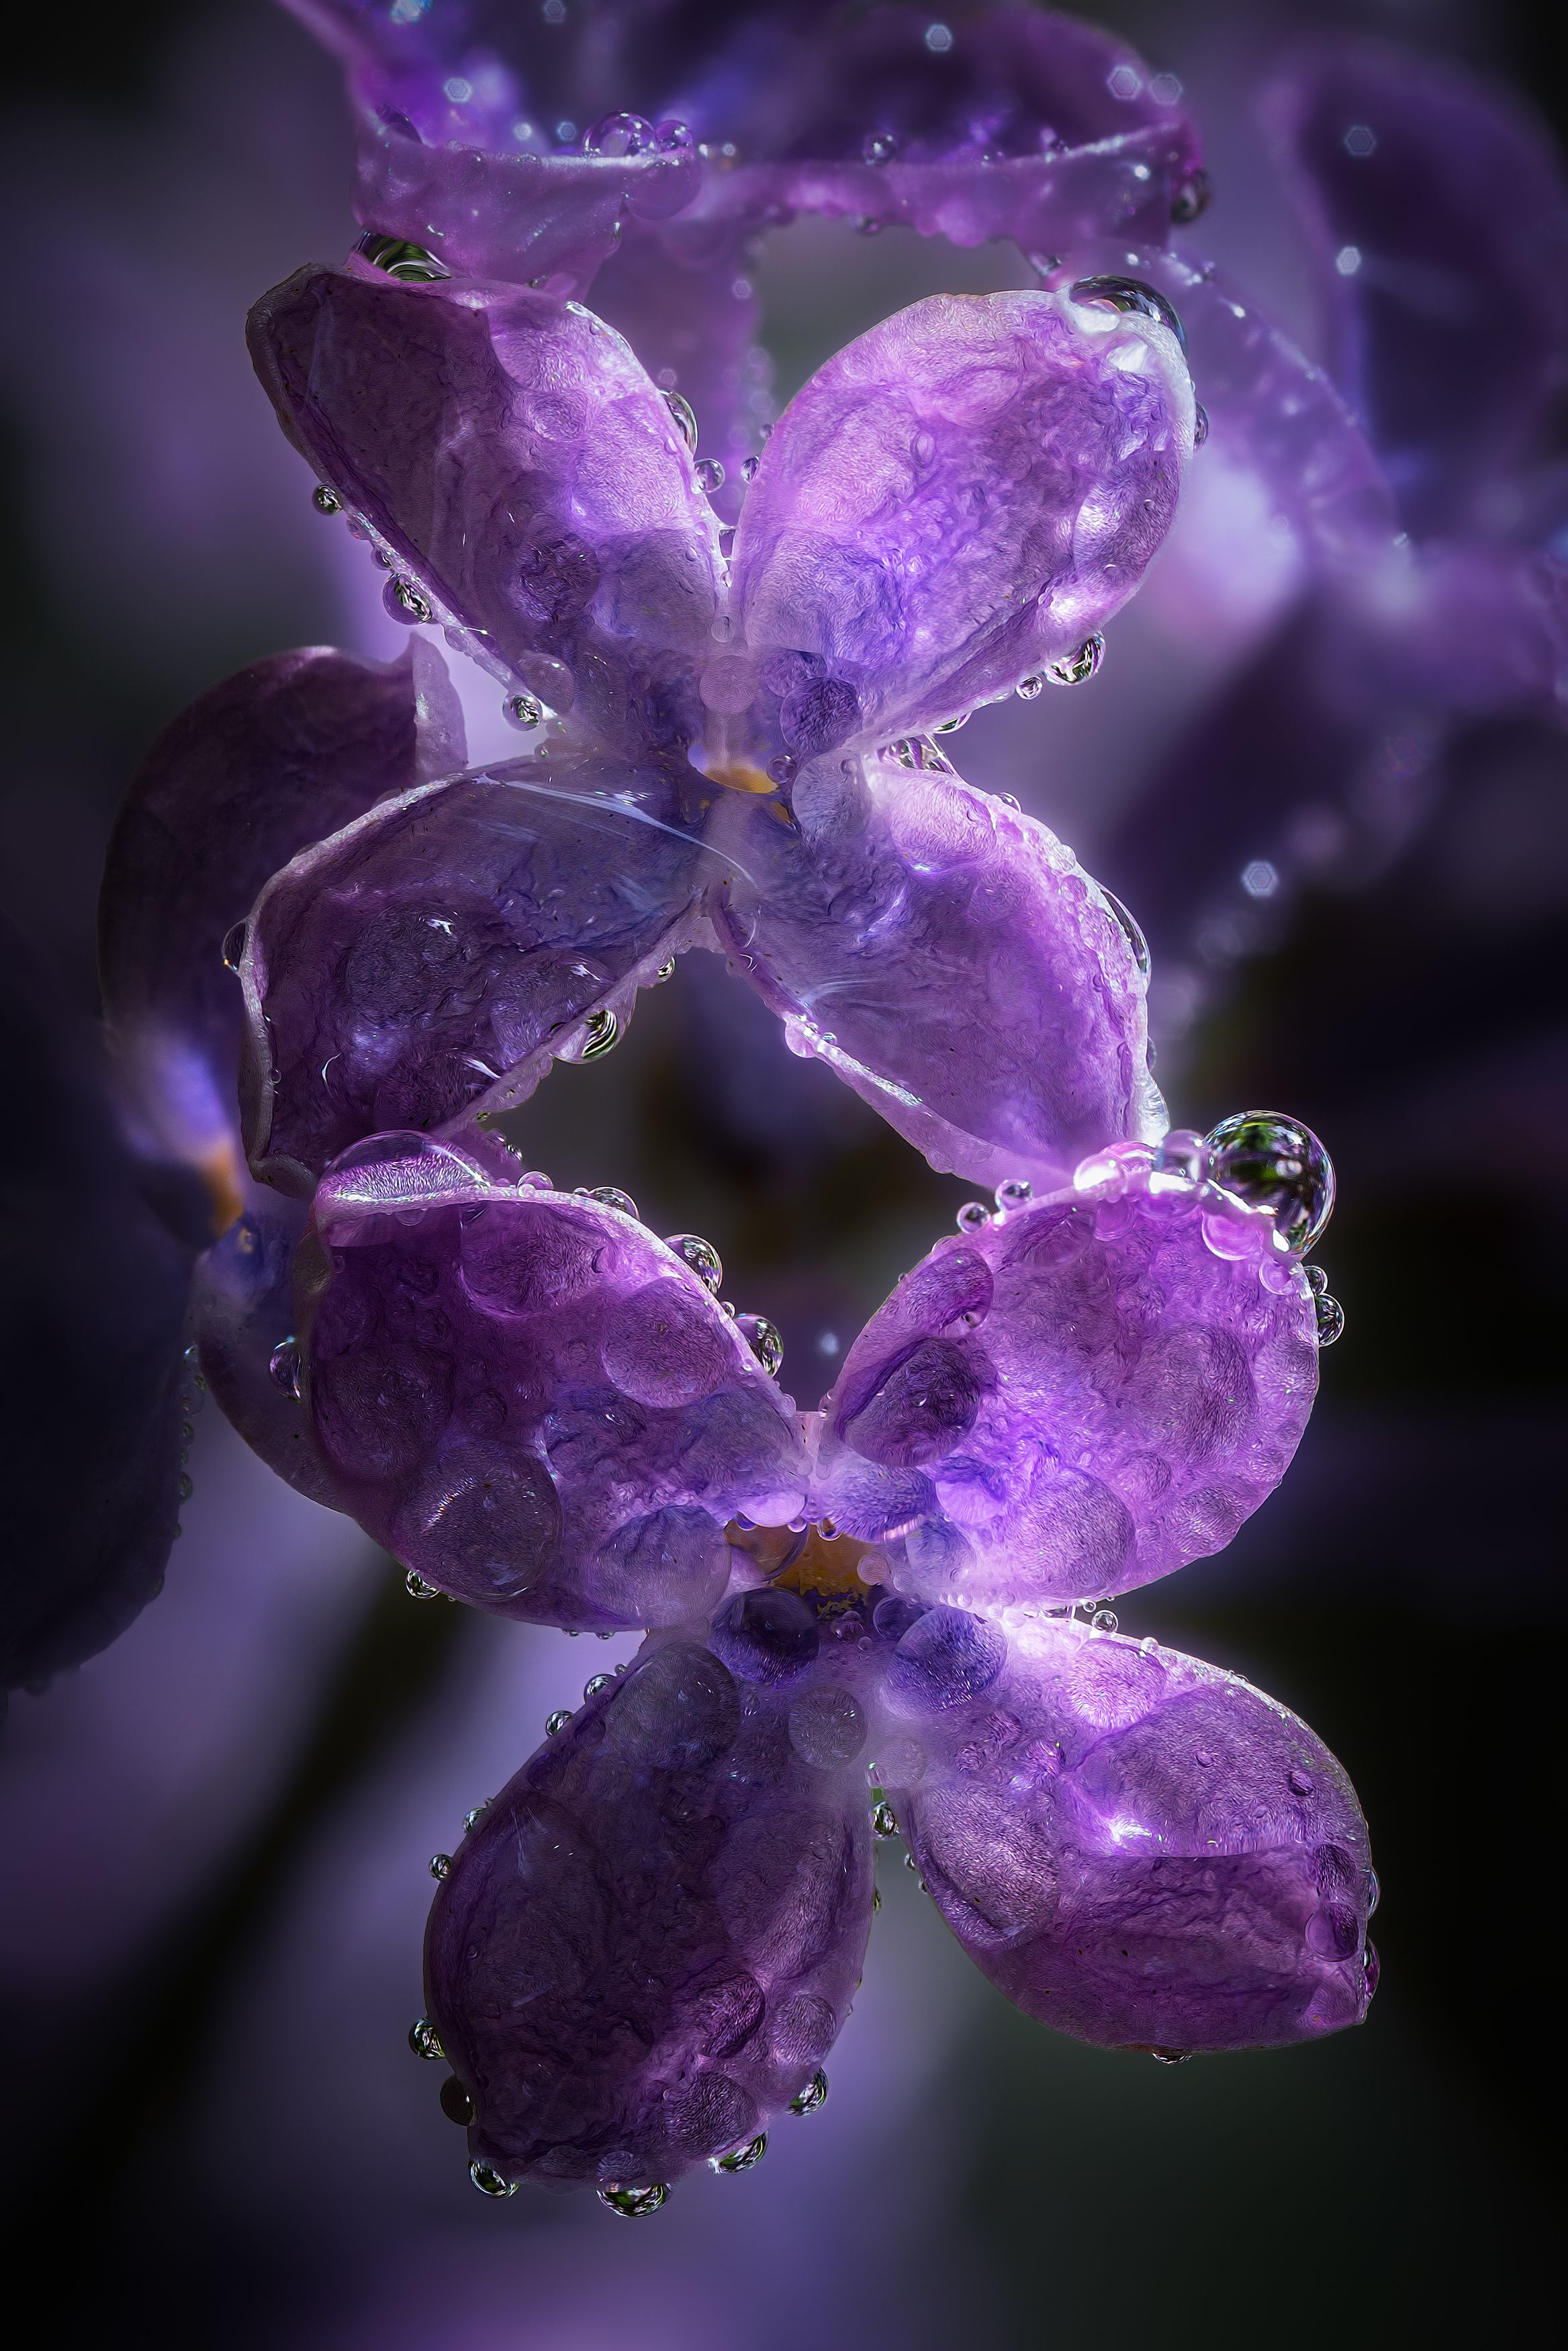 сирень цветки капли дождь природа свет цвет флора макро фотография май весна, Еремеев Дмитрий